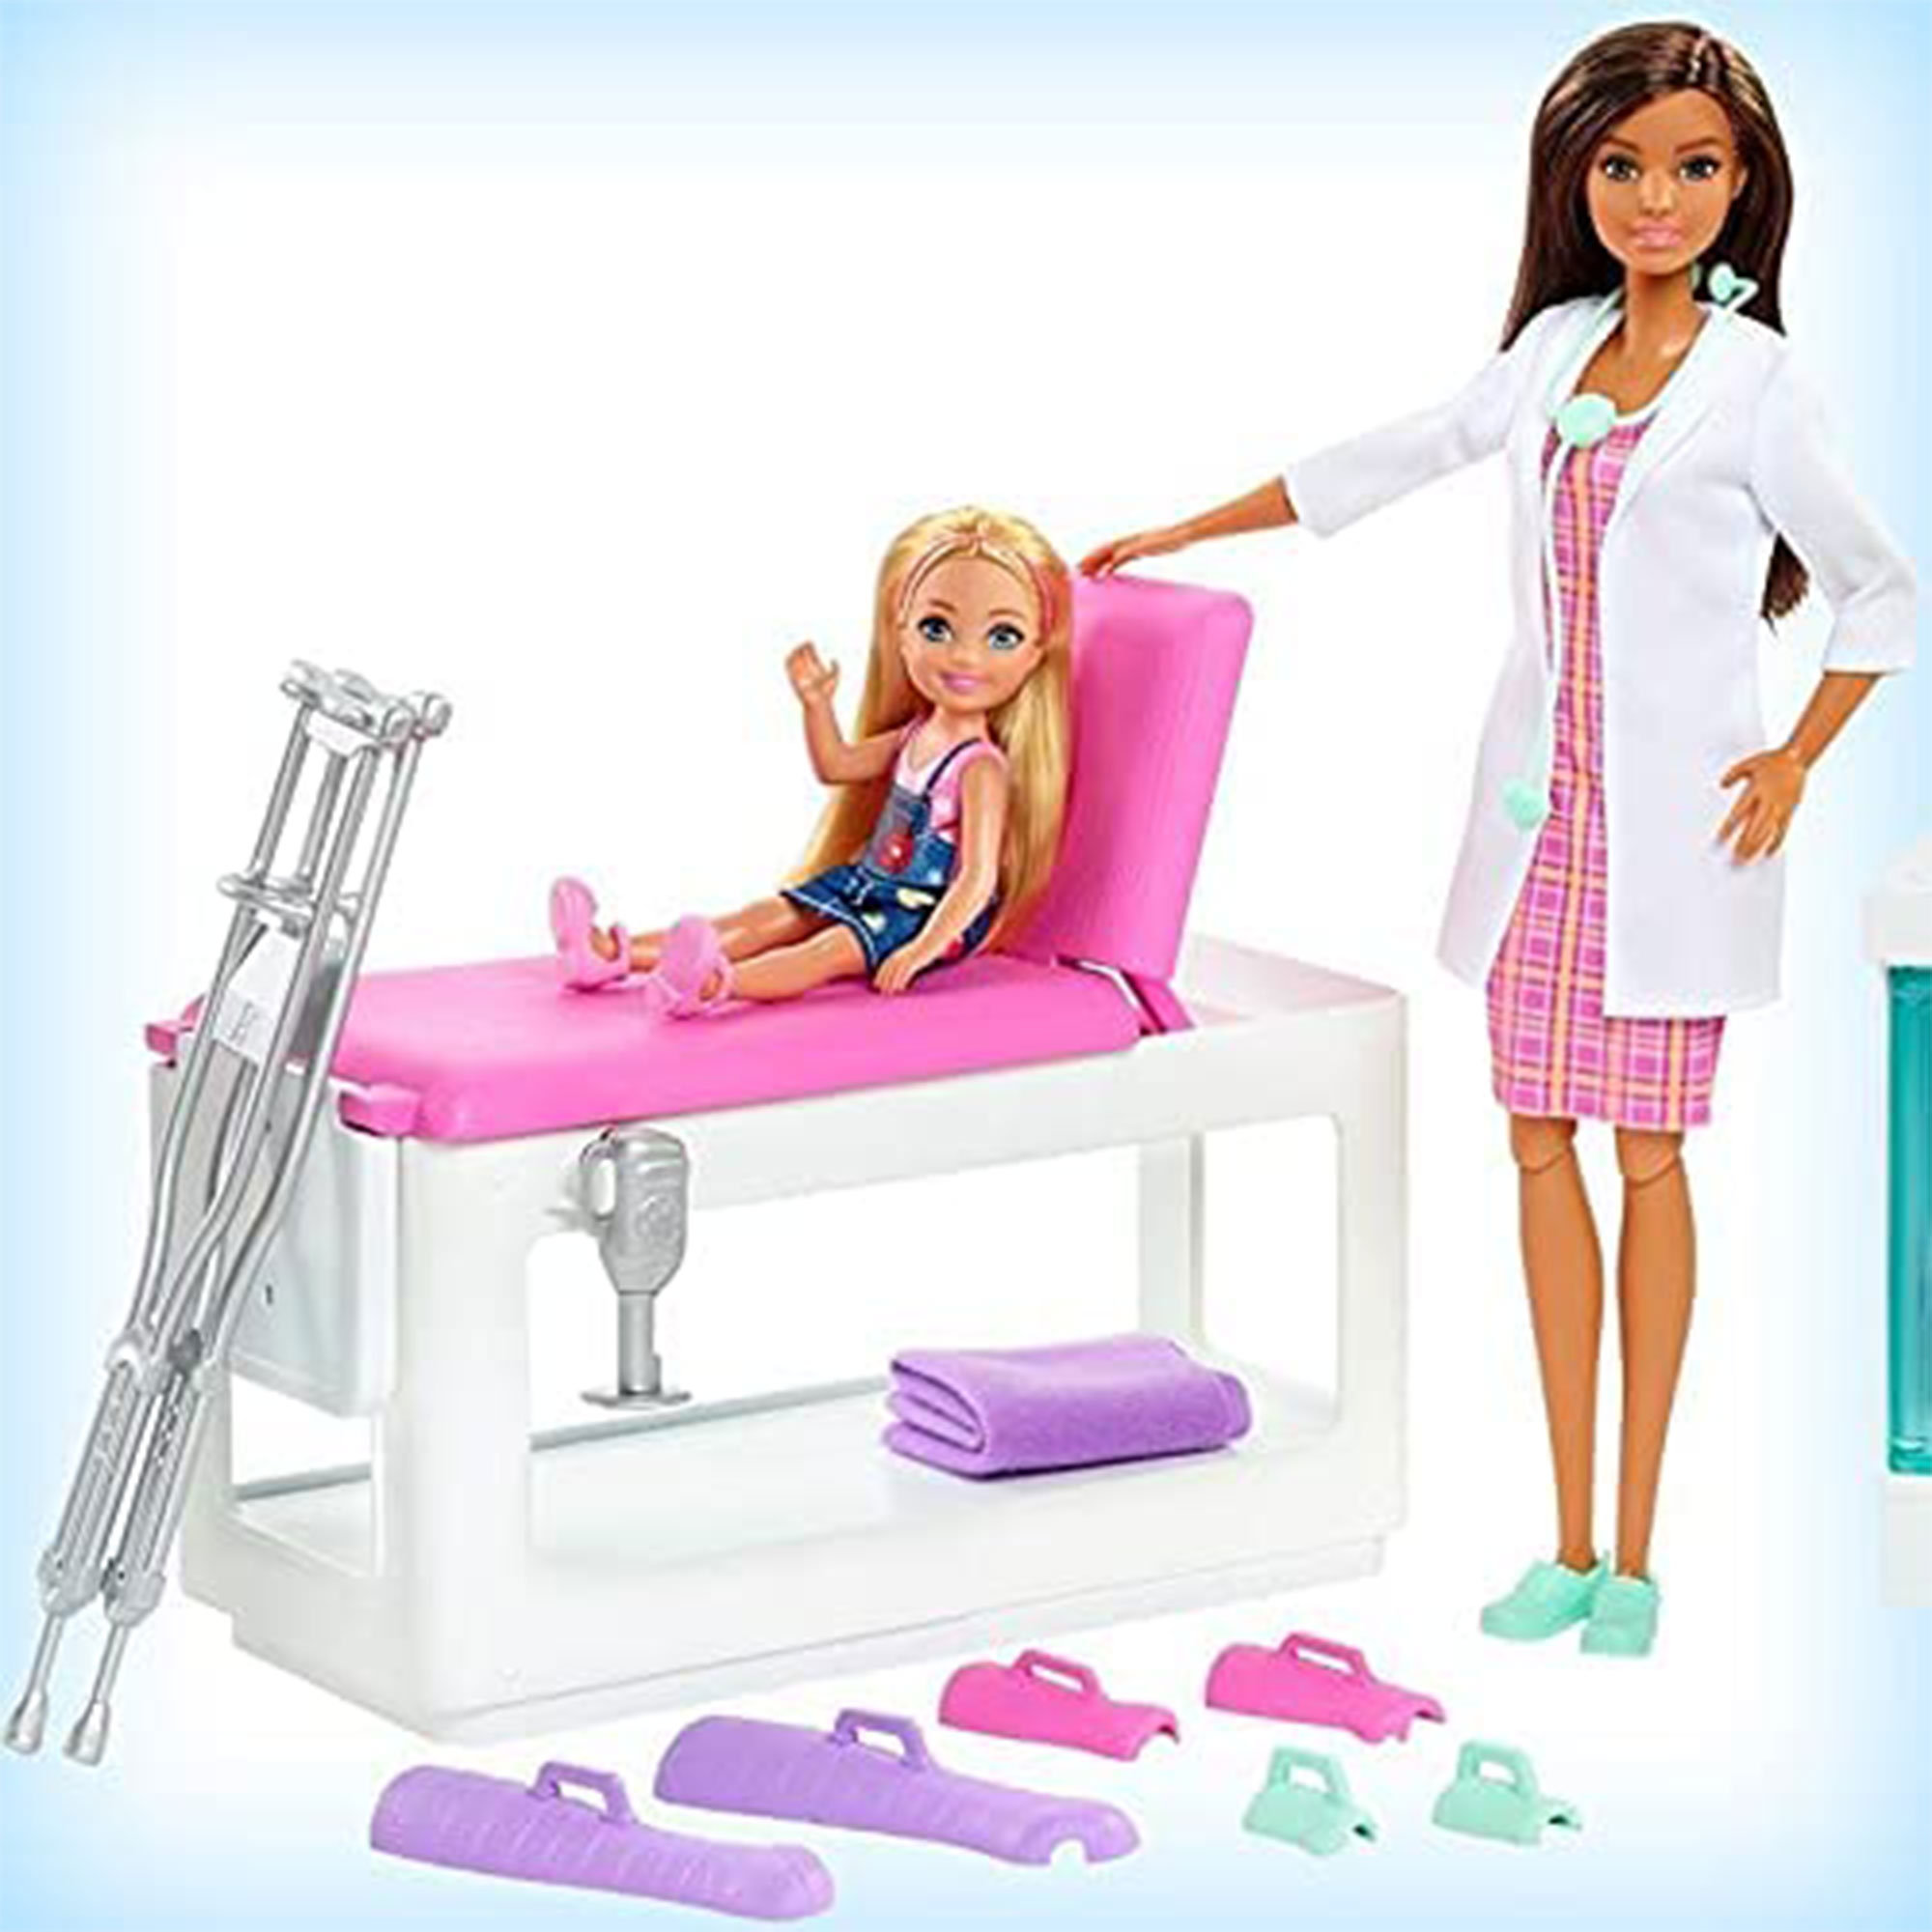 Barbie - Dottoressa Clinica di Pronto Soccorso, con capelli scuri, 4 aree  da gioco ed oltre 30 pezzi inclusi, per bambini 3+ anni - Toys Center